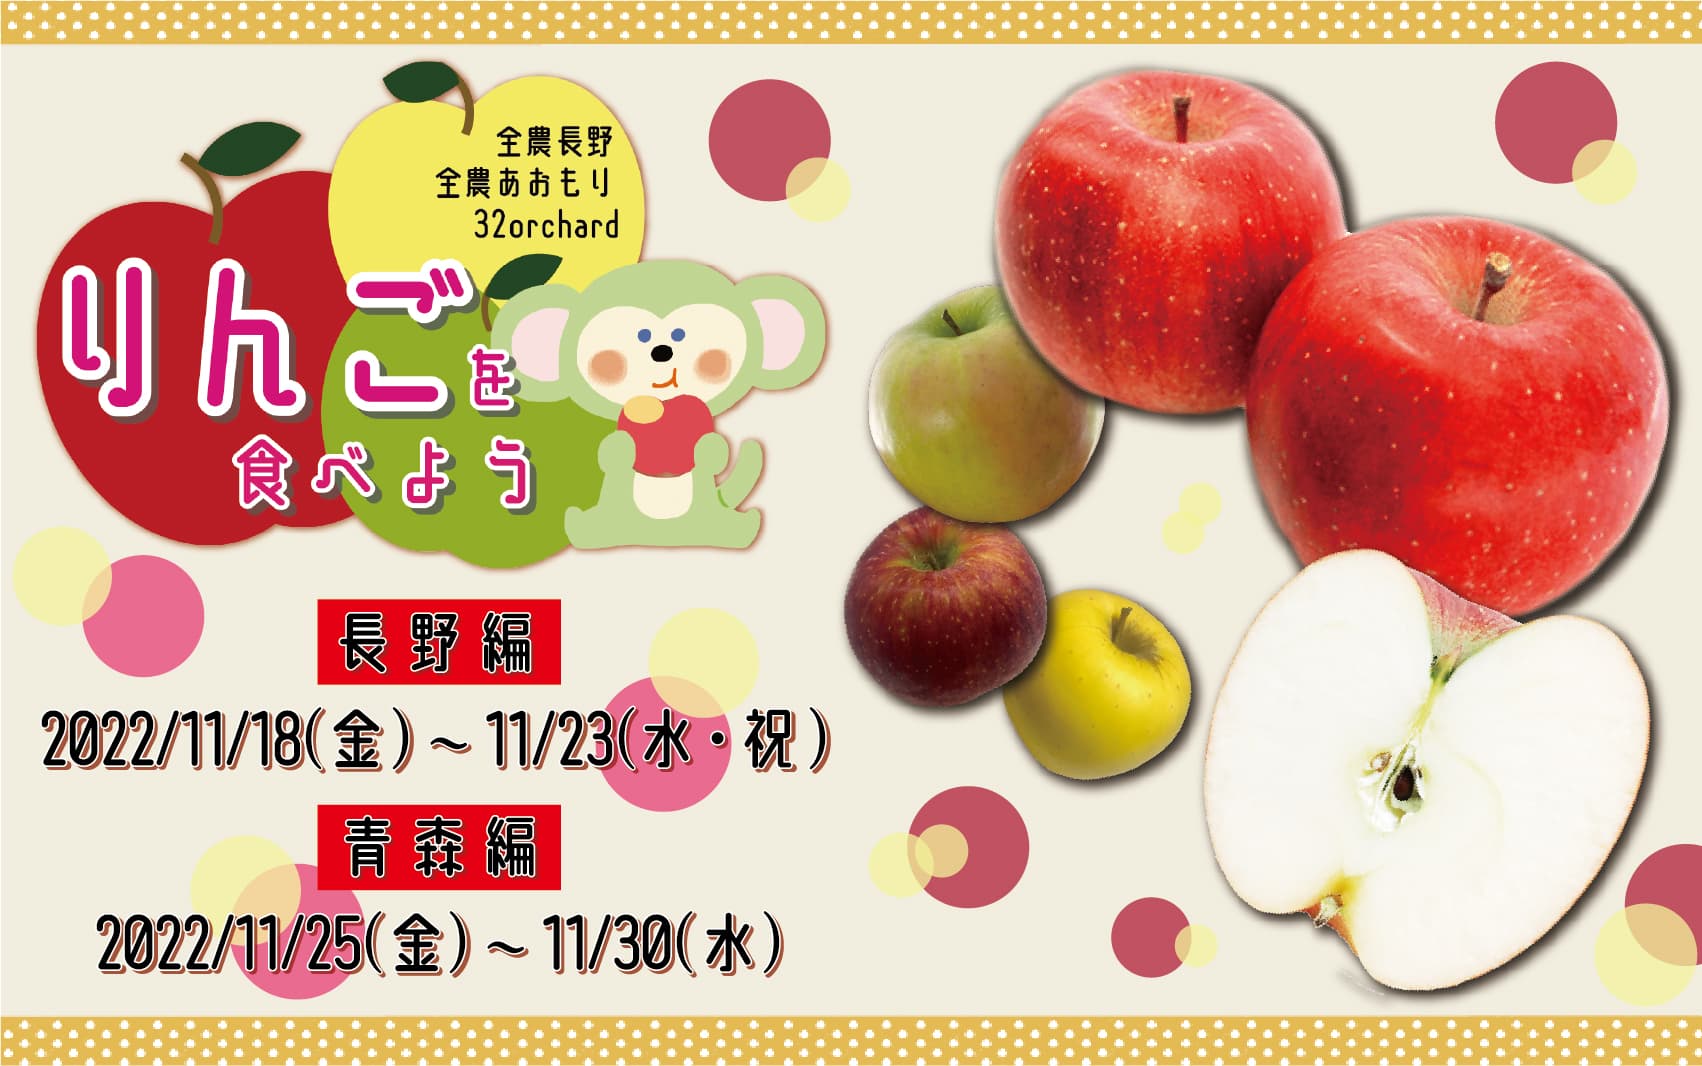 りんごを食べよう2022(11/25~11/30まで開催)